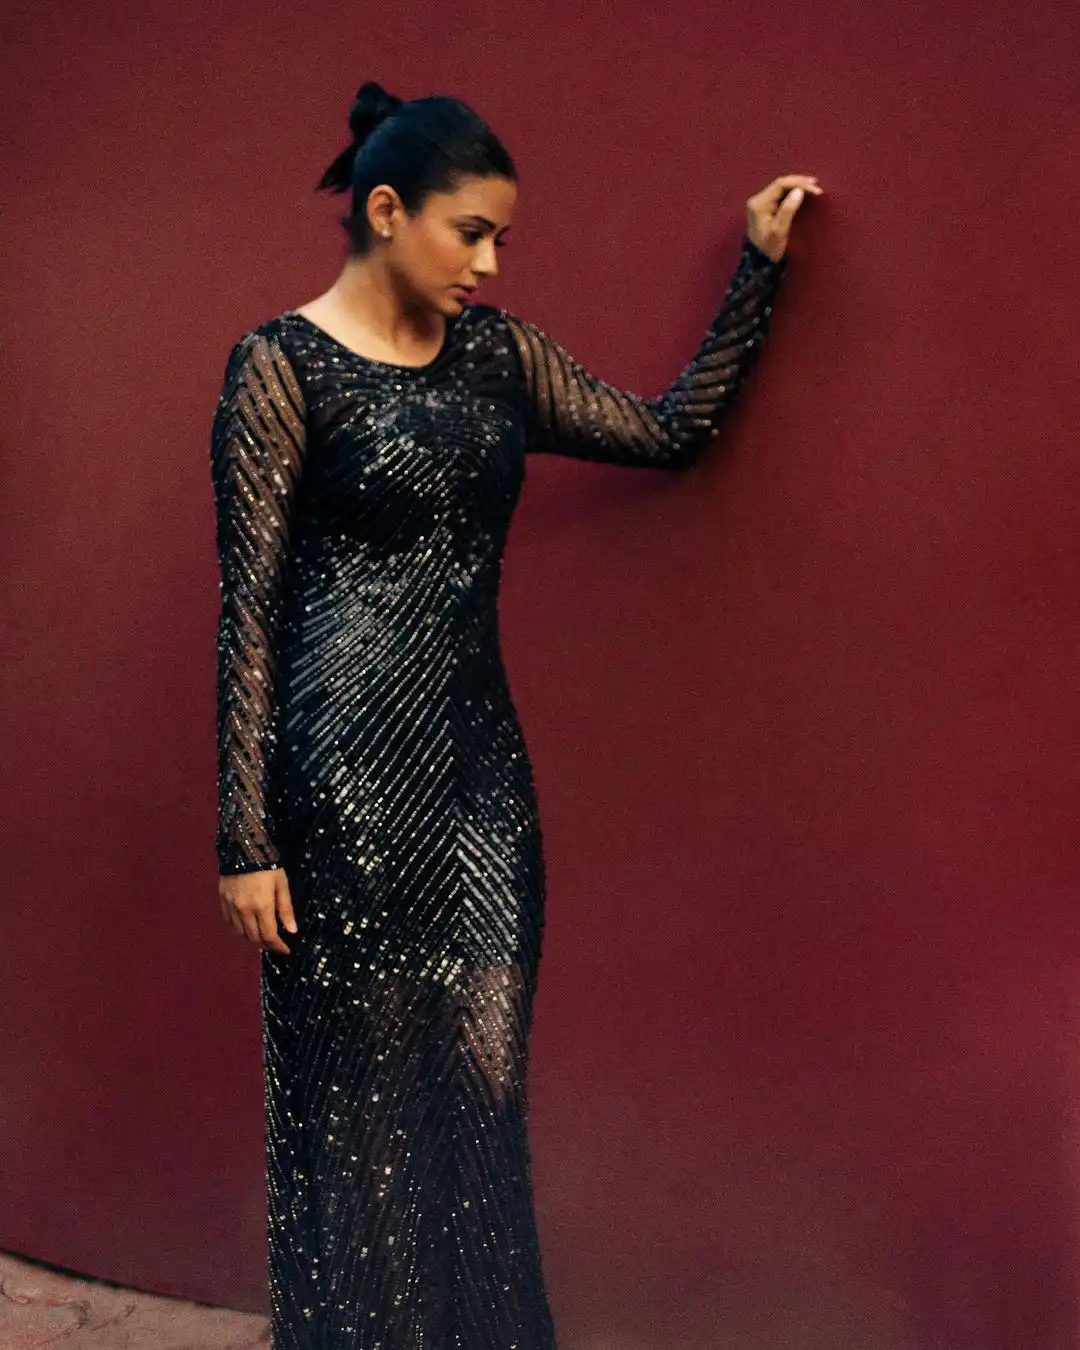 Priyamani stunning looks in black dress